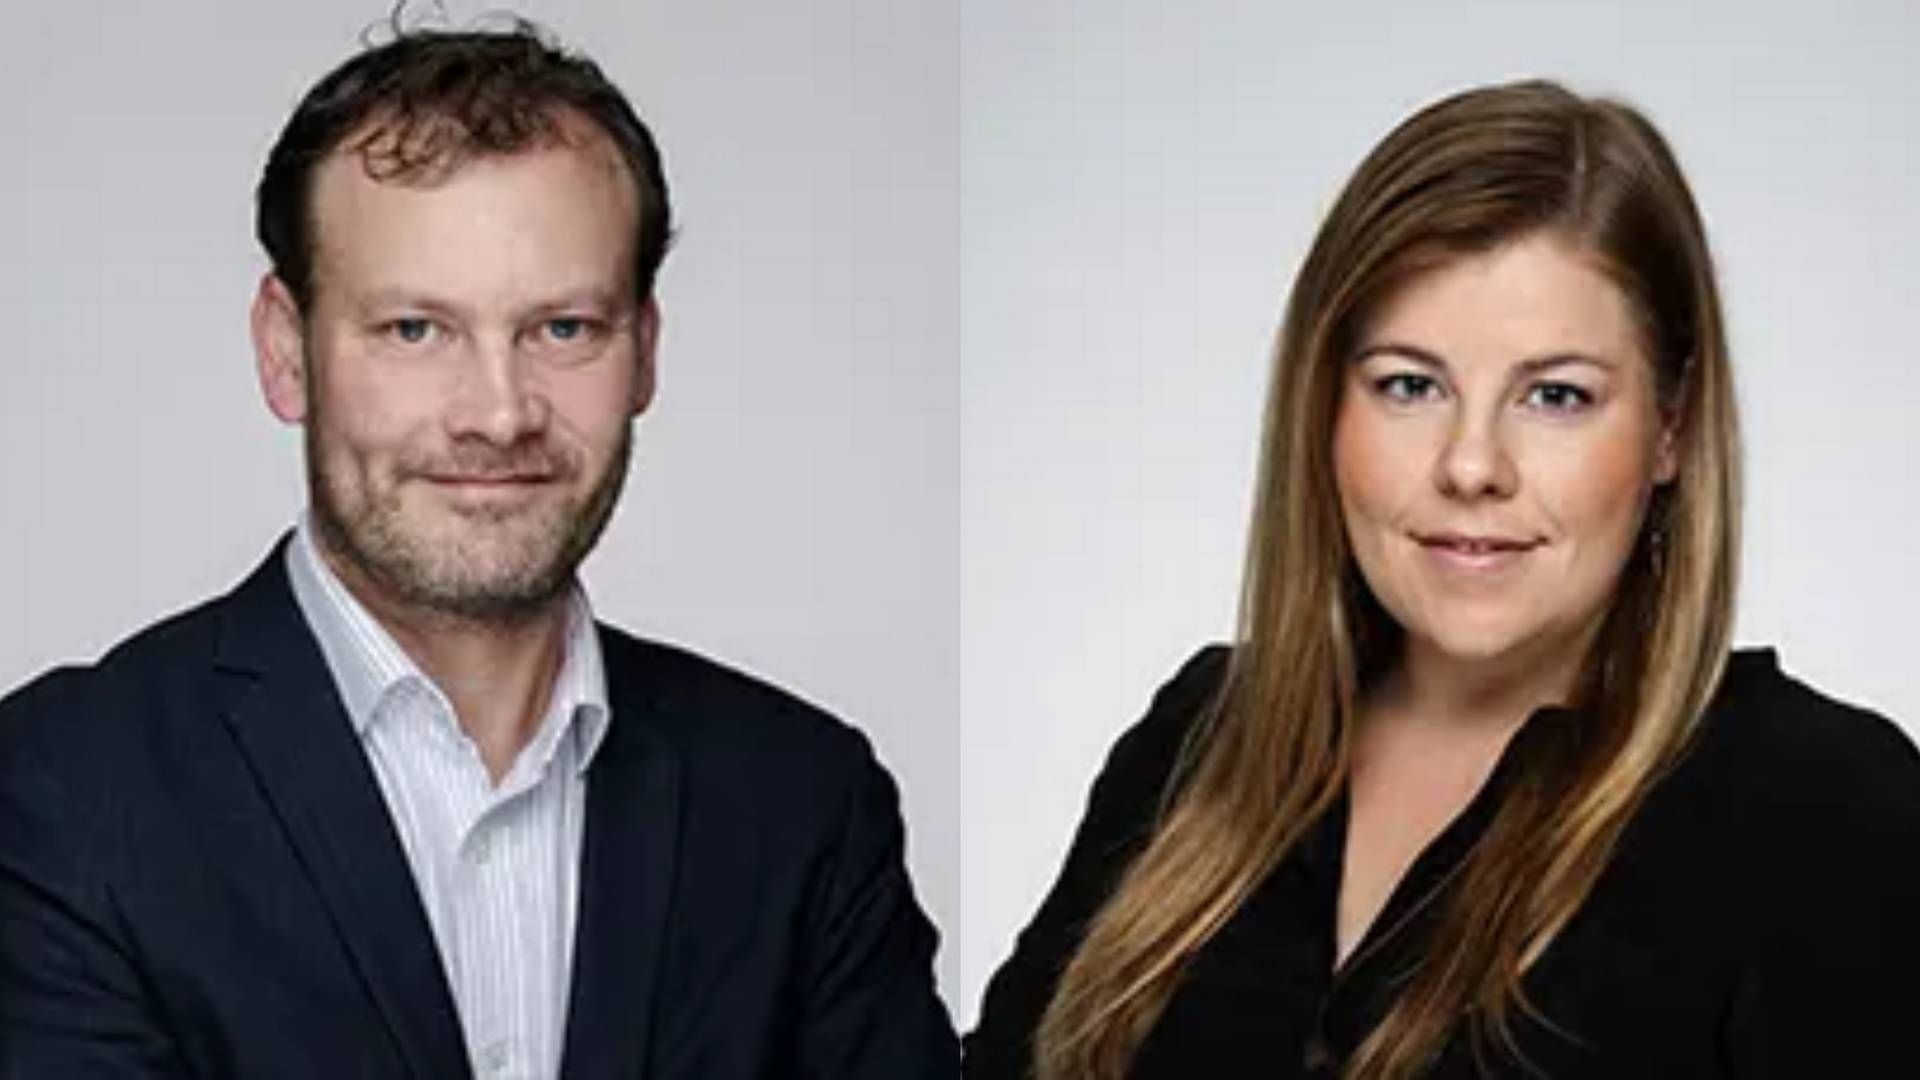 Claus Petter Moe og Marthe Lise Drolsum blir partnere i RSM. | Foto: RSM Norge